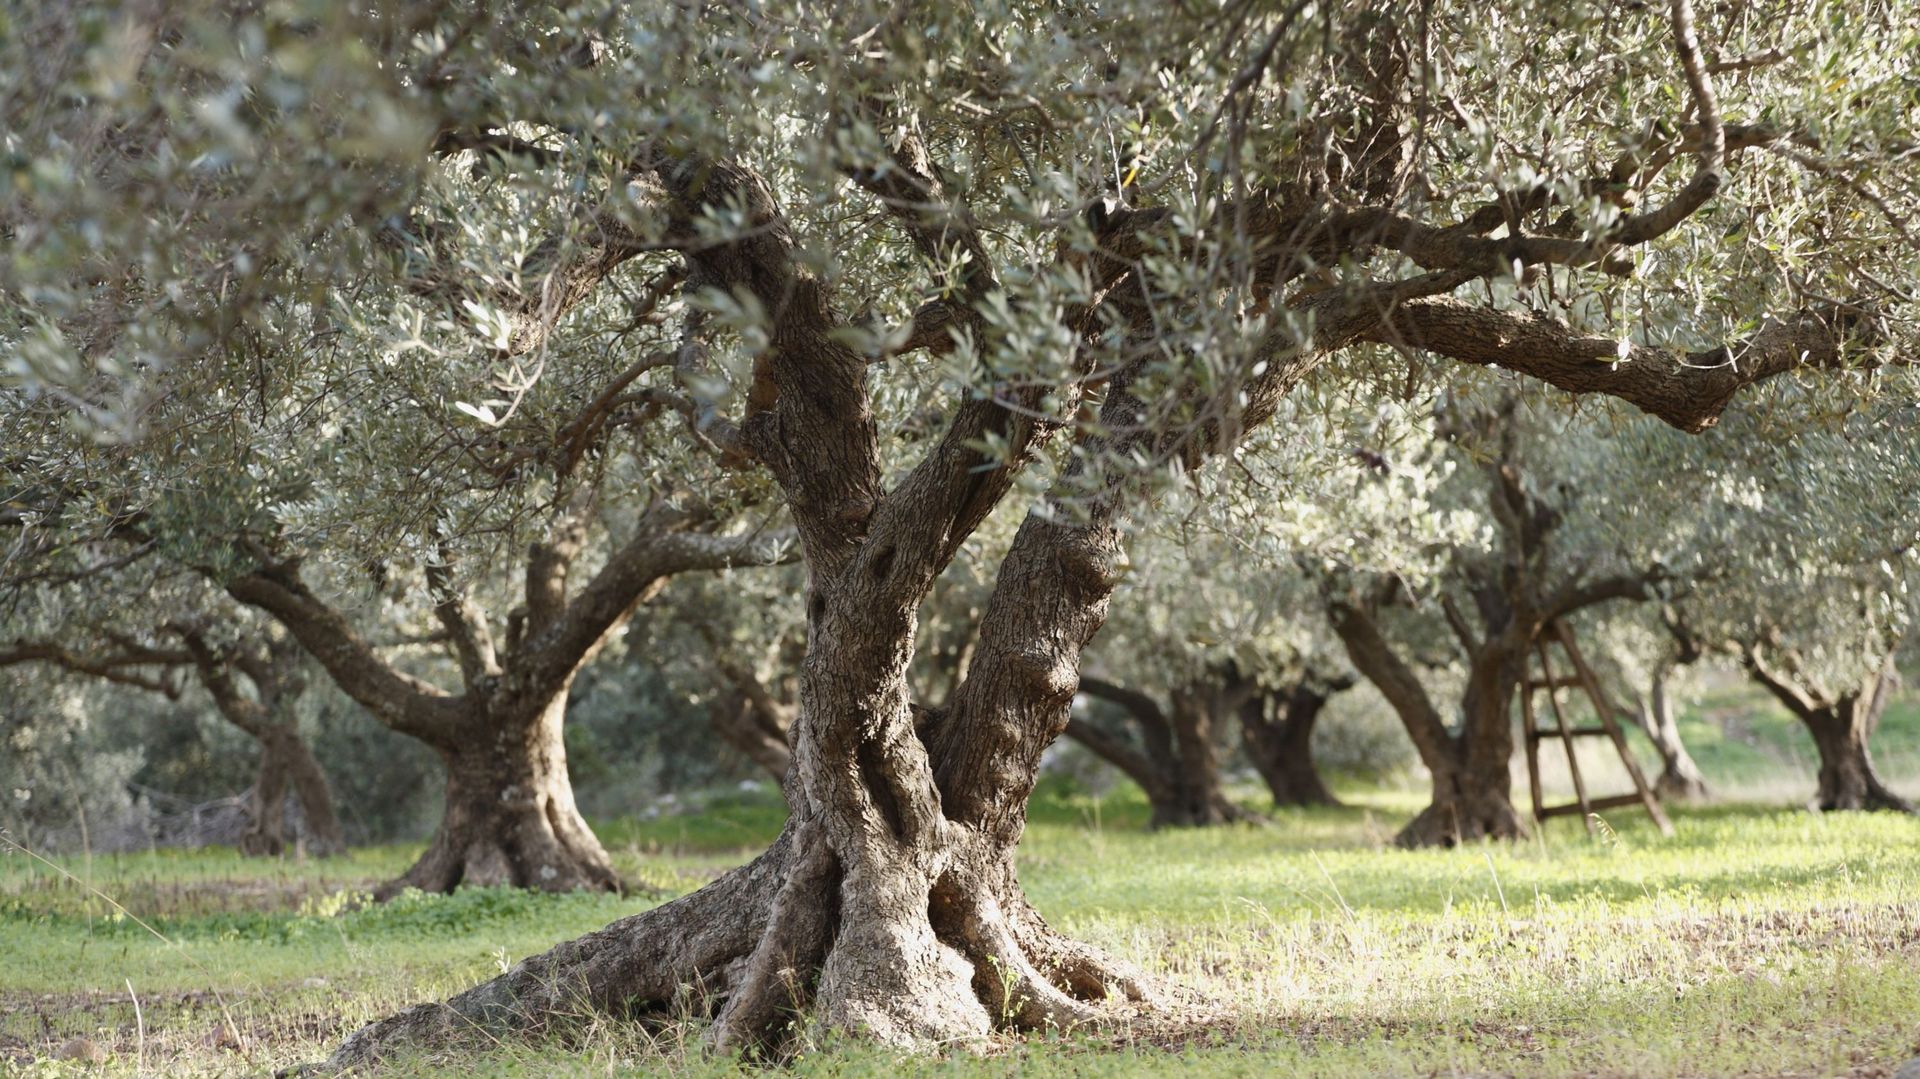 Dans le Midi, la production d’olives est en croissance. Non seulement de nouveaux champs d’oliviers sont créés, mais des particuliers prennent aussi soin de vieux arbres présents sur leurs terrains et en plantent de plus jeunes.